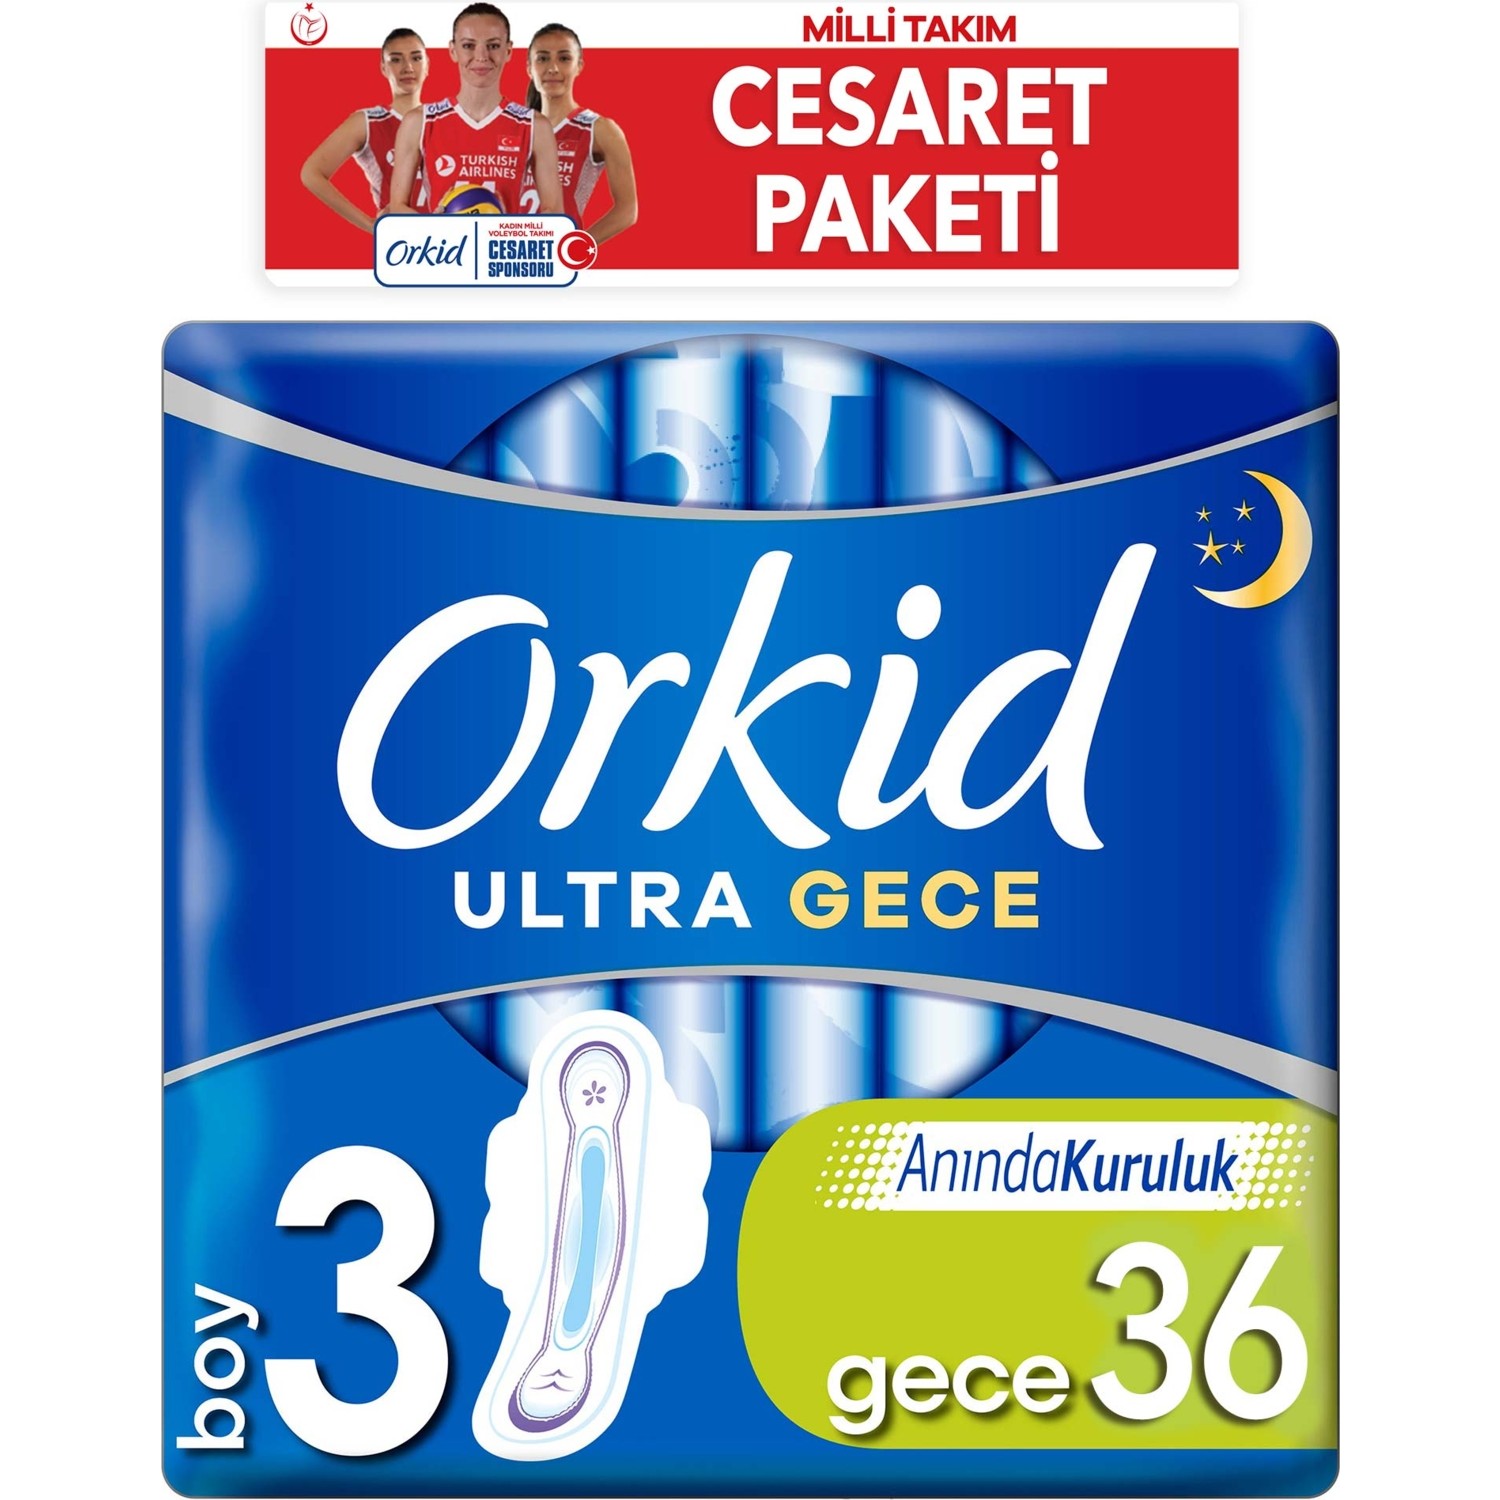 Orkid Ultra Extra Cesaret Paketi Gece Ped 36x3 108 Adet